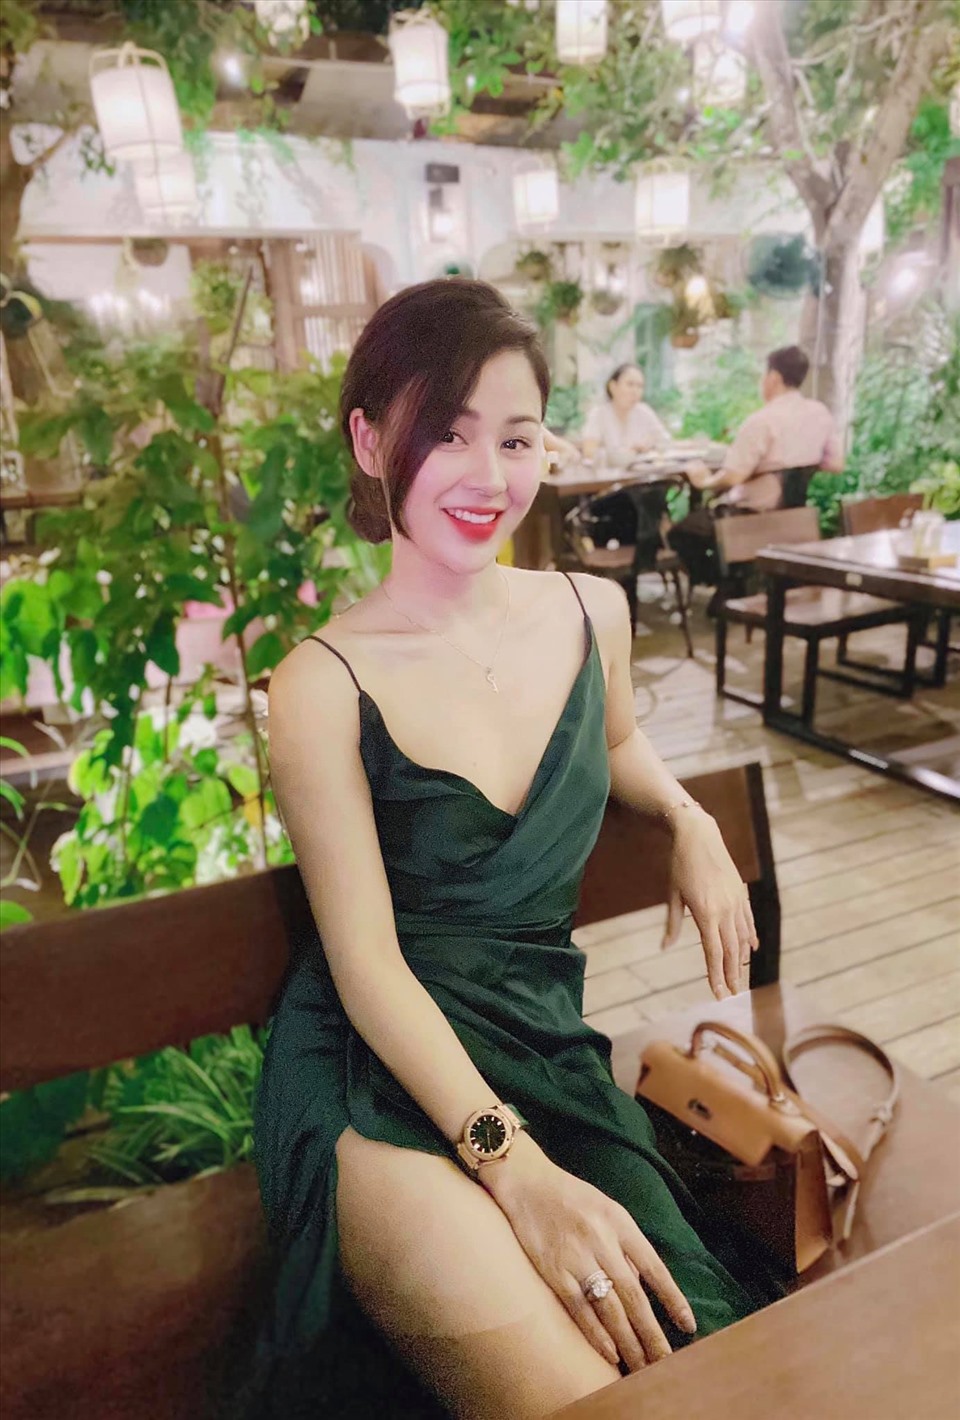 Không chỉ ăn vận sành điệu, quyến rũ ở các sự kiện lớn, đời thường Lương Thu Trang cũng lựa chọn các trang phục có thể khoe dáng vóc như đầm xẻ cao, áo crop top... Ảnh: FBNV.